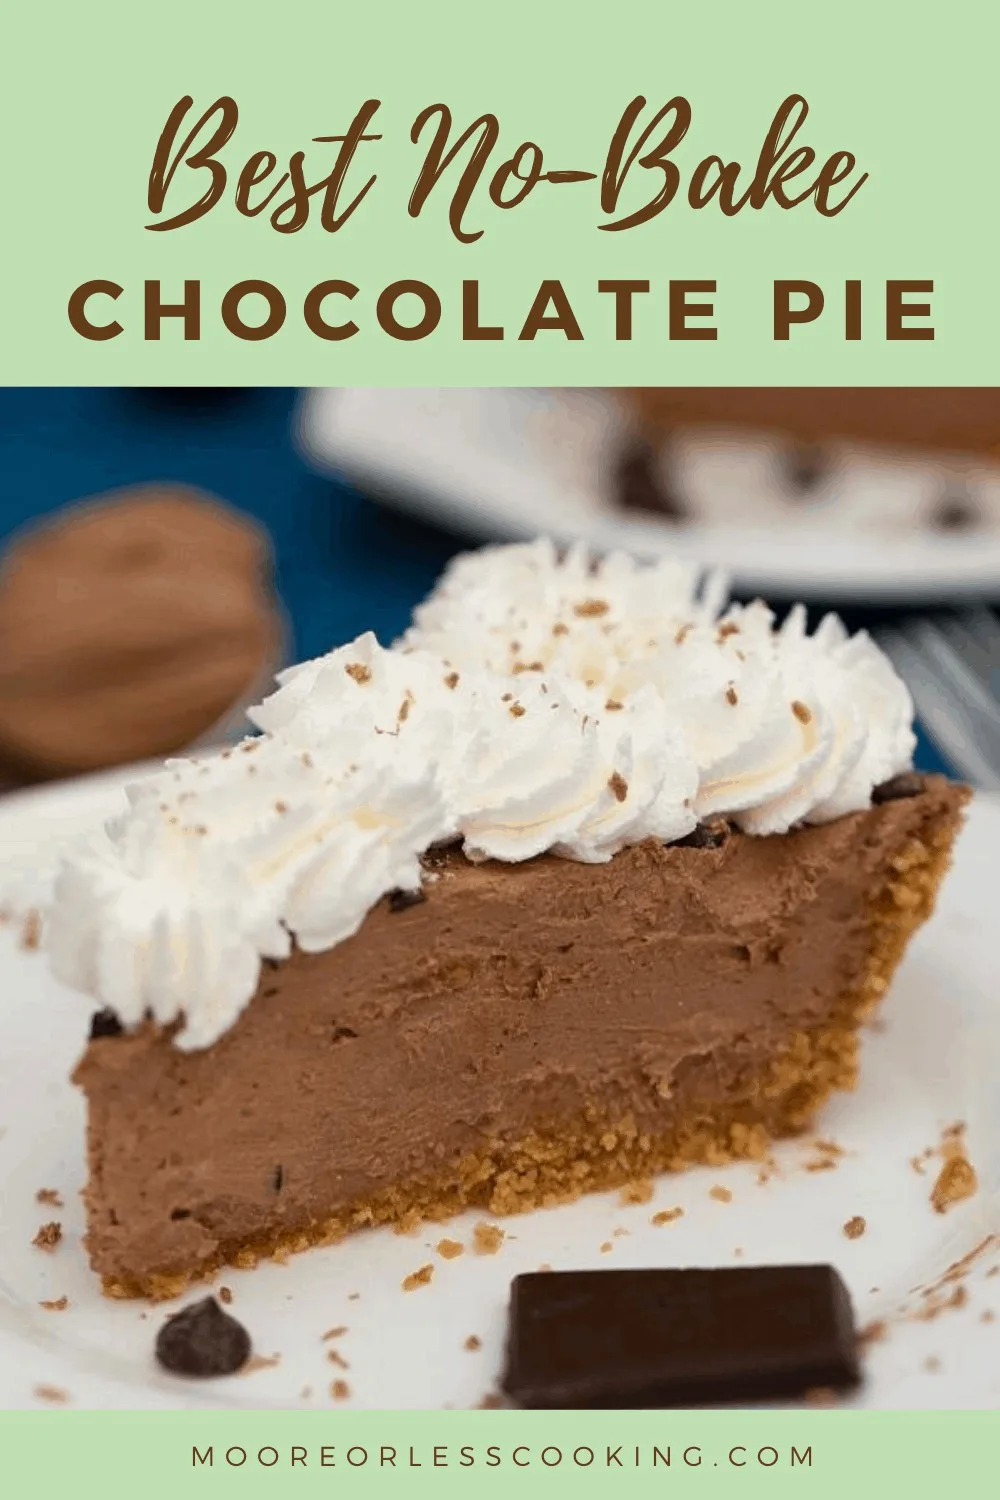 Best No-Bake Chocolate Pie